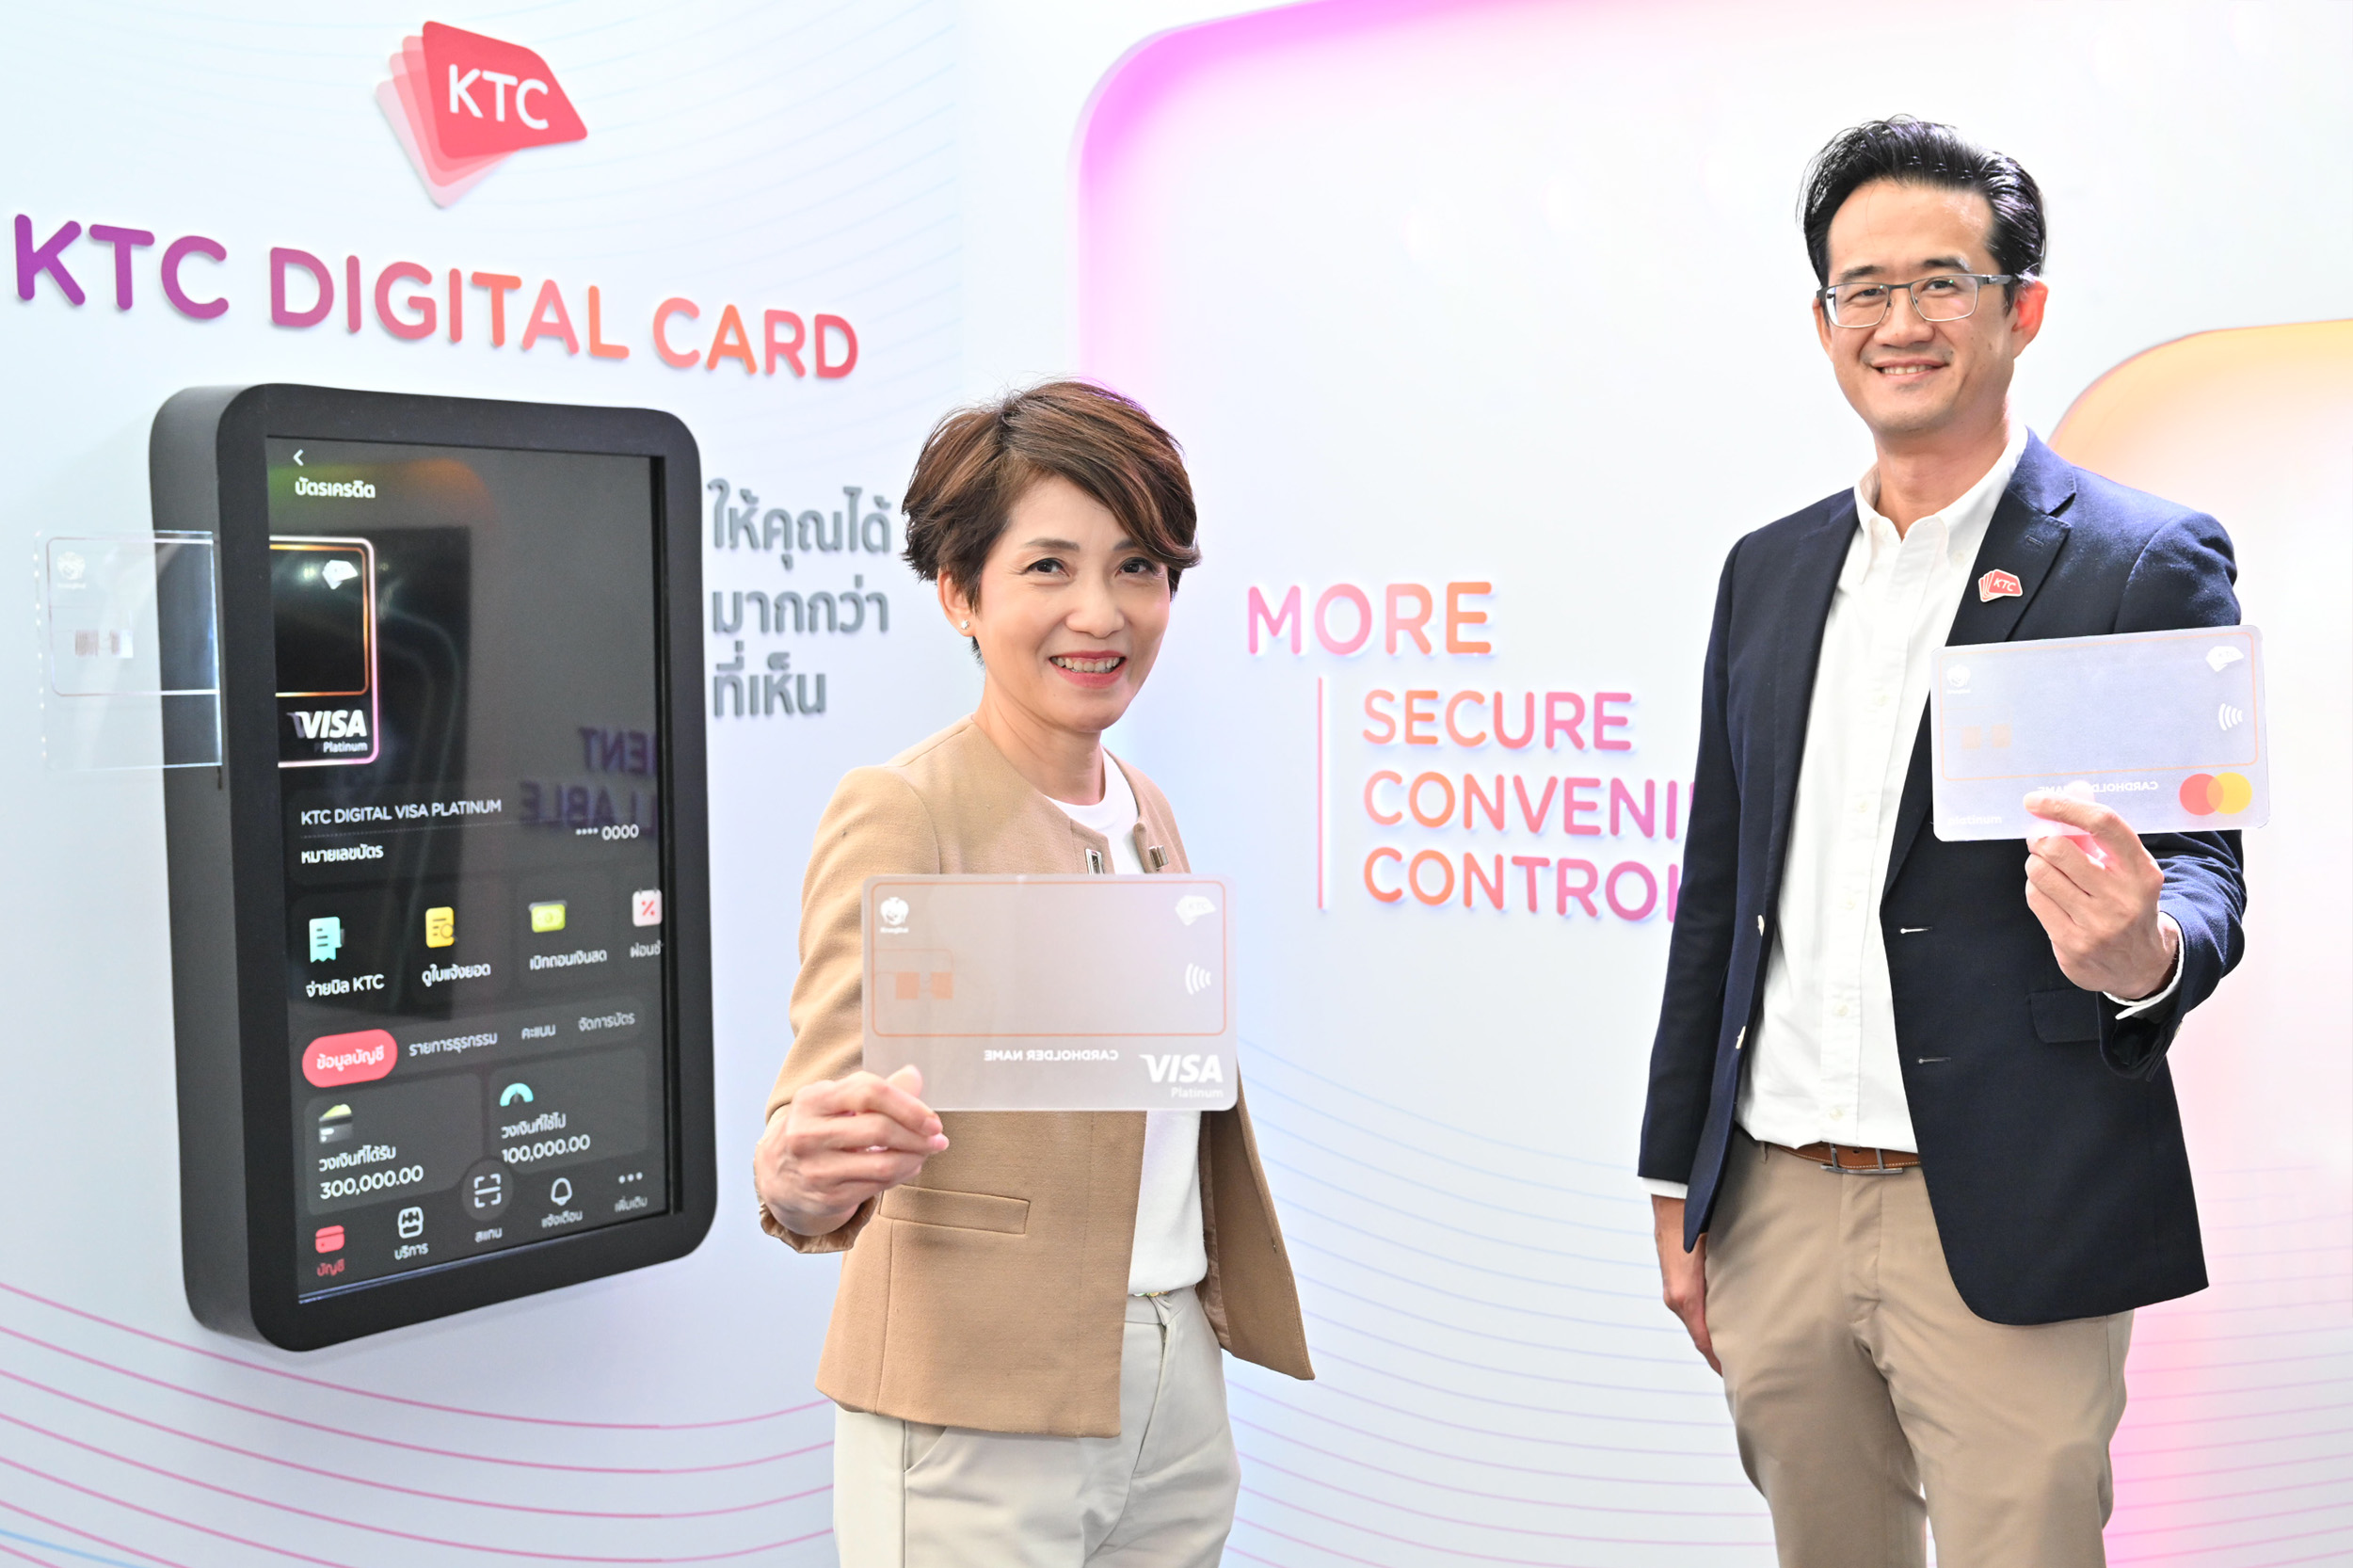 เคทีซีเผยบัตร KTC DIGITAL CREDIT CARD บัตรเครดิตสุดปลอดภัยครั้งแรกในไทย  ปักหมุดนวัตกรรมล้ำ ในงาน BOT Digital Finance Conference 14-15 กันยายนนี้